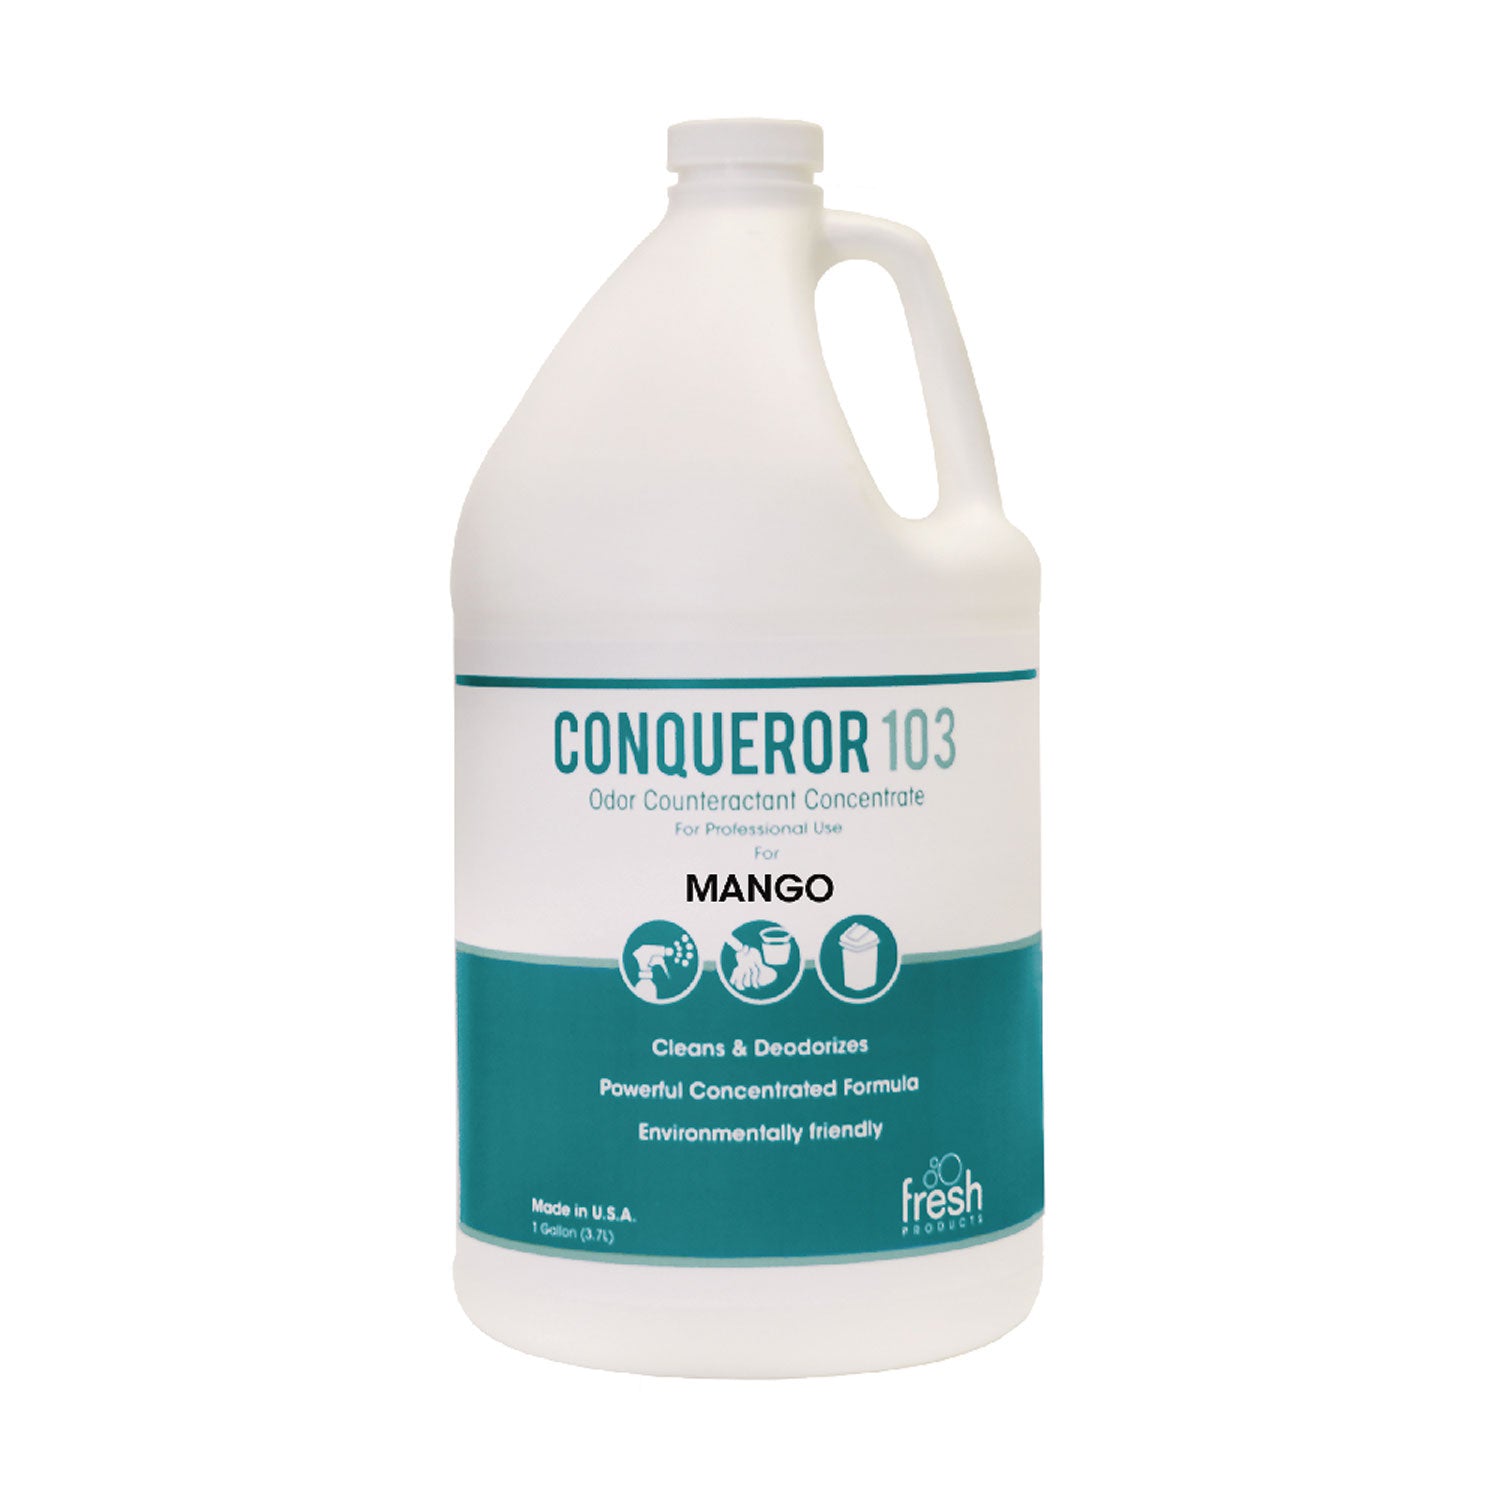 Conqueror 103 Odor Counteractant Concentrate, Mango, 1 gal Bottle, 4/Carton - 1